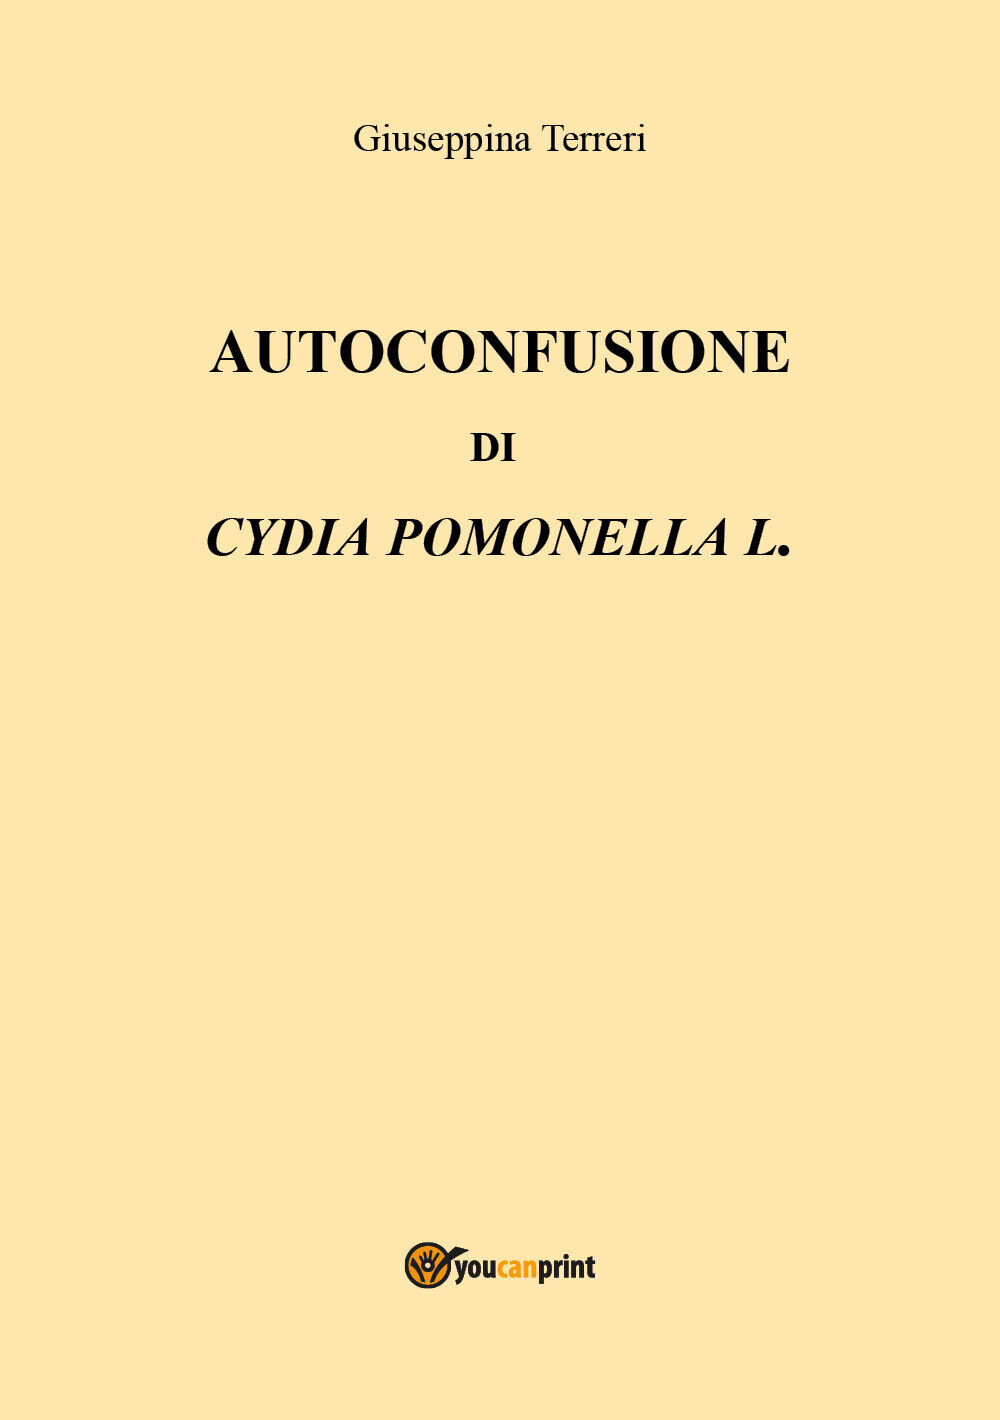 Autoconfusione di Cydia pomonella L. - Giuseppina Terreri,  2018,  Youcanprint libro usato